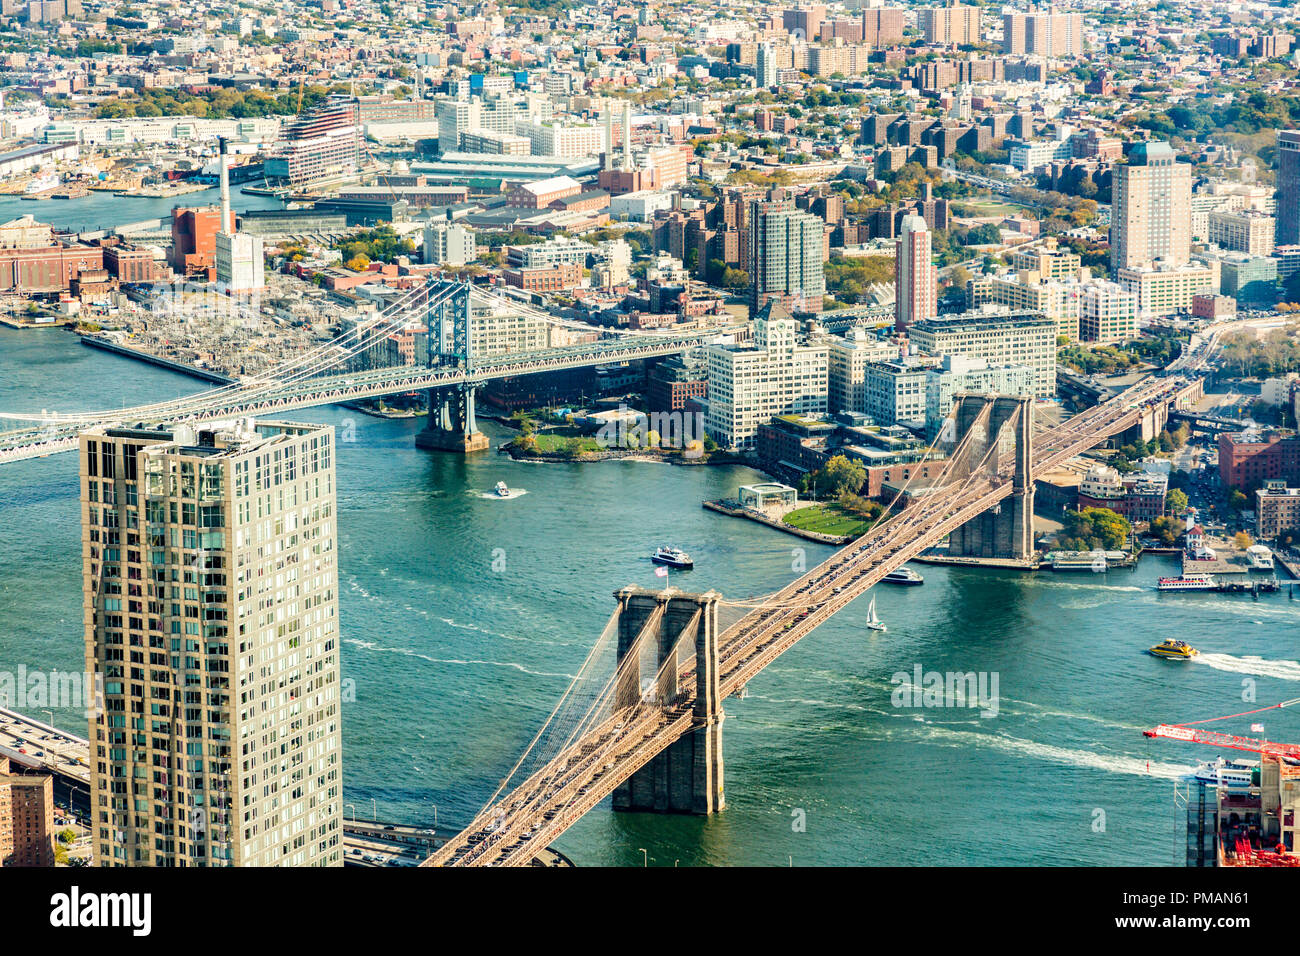 Esta vista aérea del centro de Manhattan y Brooklyn no fue tomada con un  zumbido, pero con una cámara de alta calidad. El Puente de Brooklyn y  Manhattan Bridge Fotografía de stock -